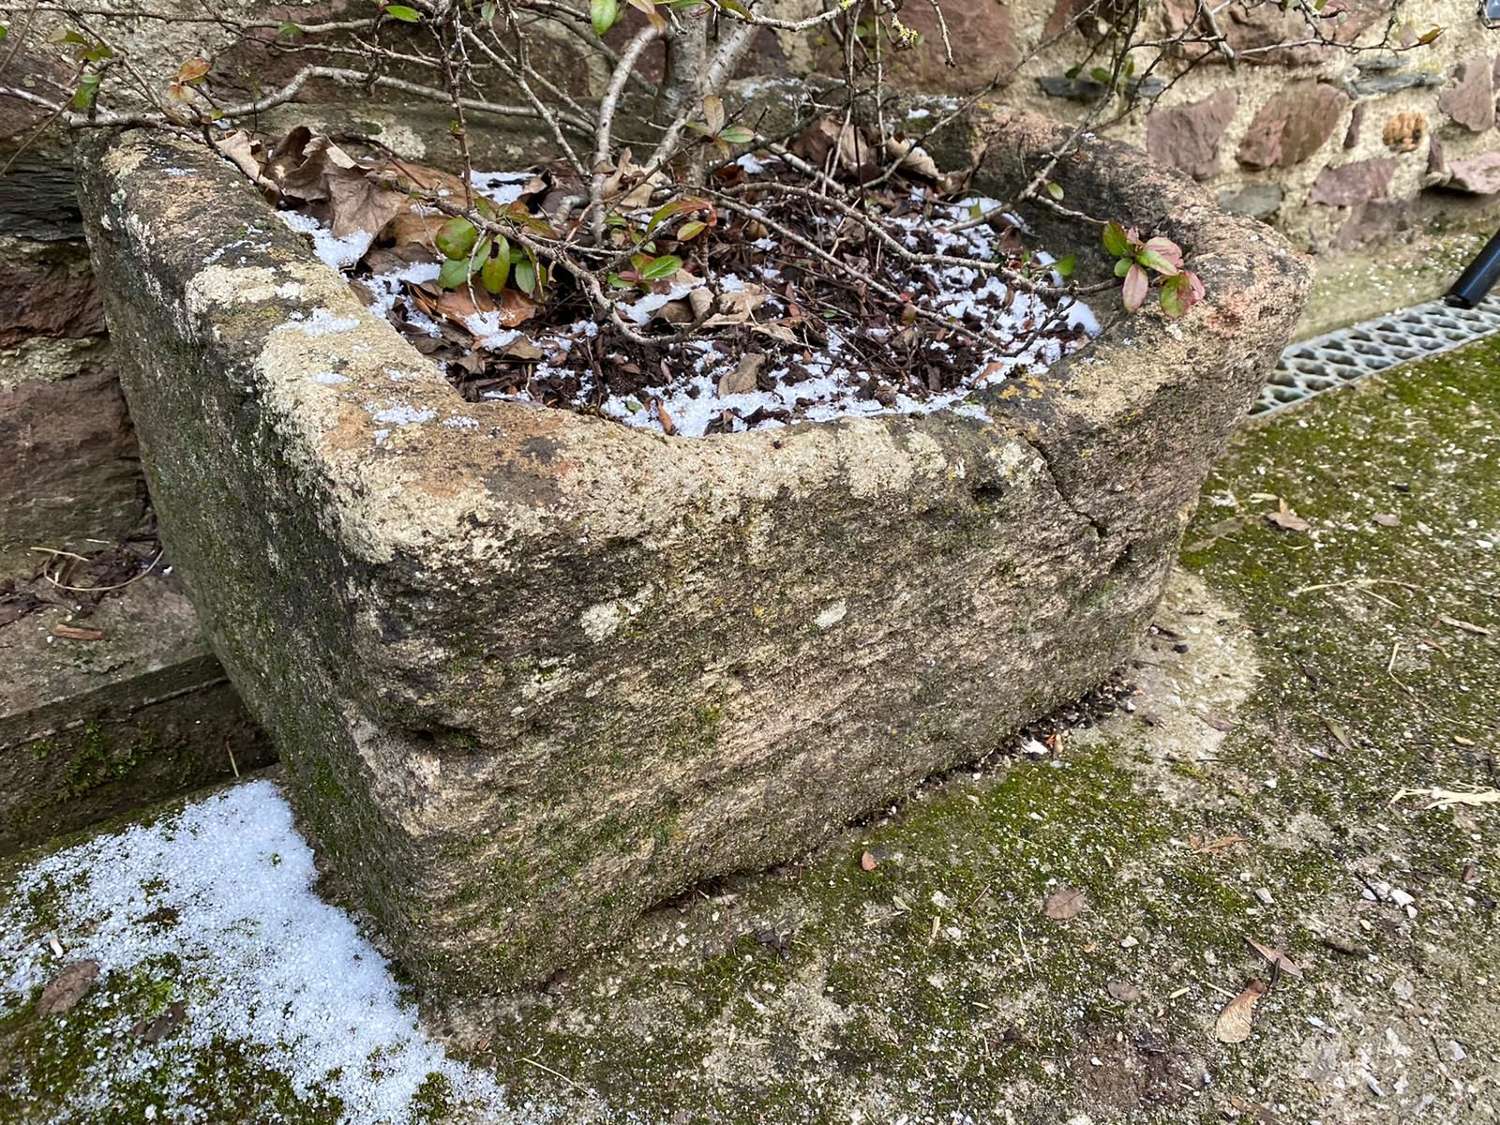 A small stone trough